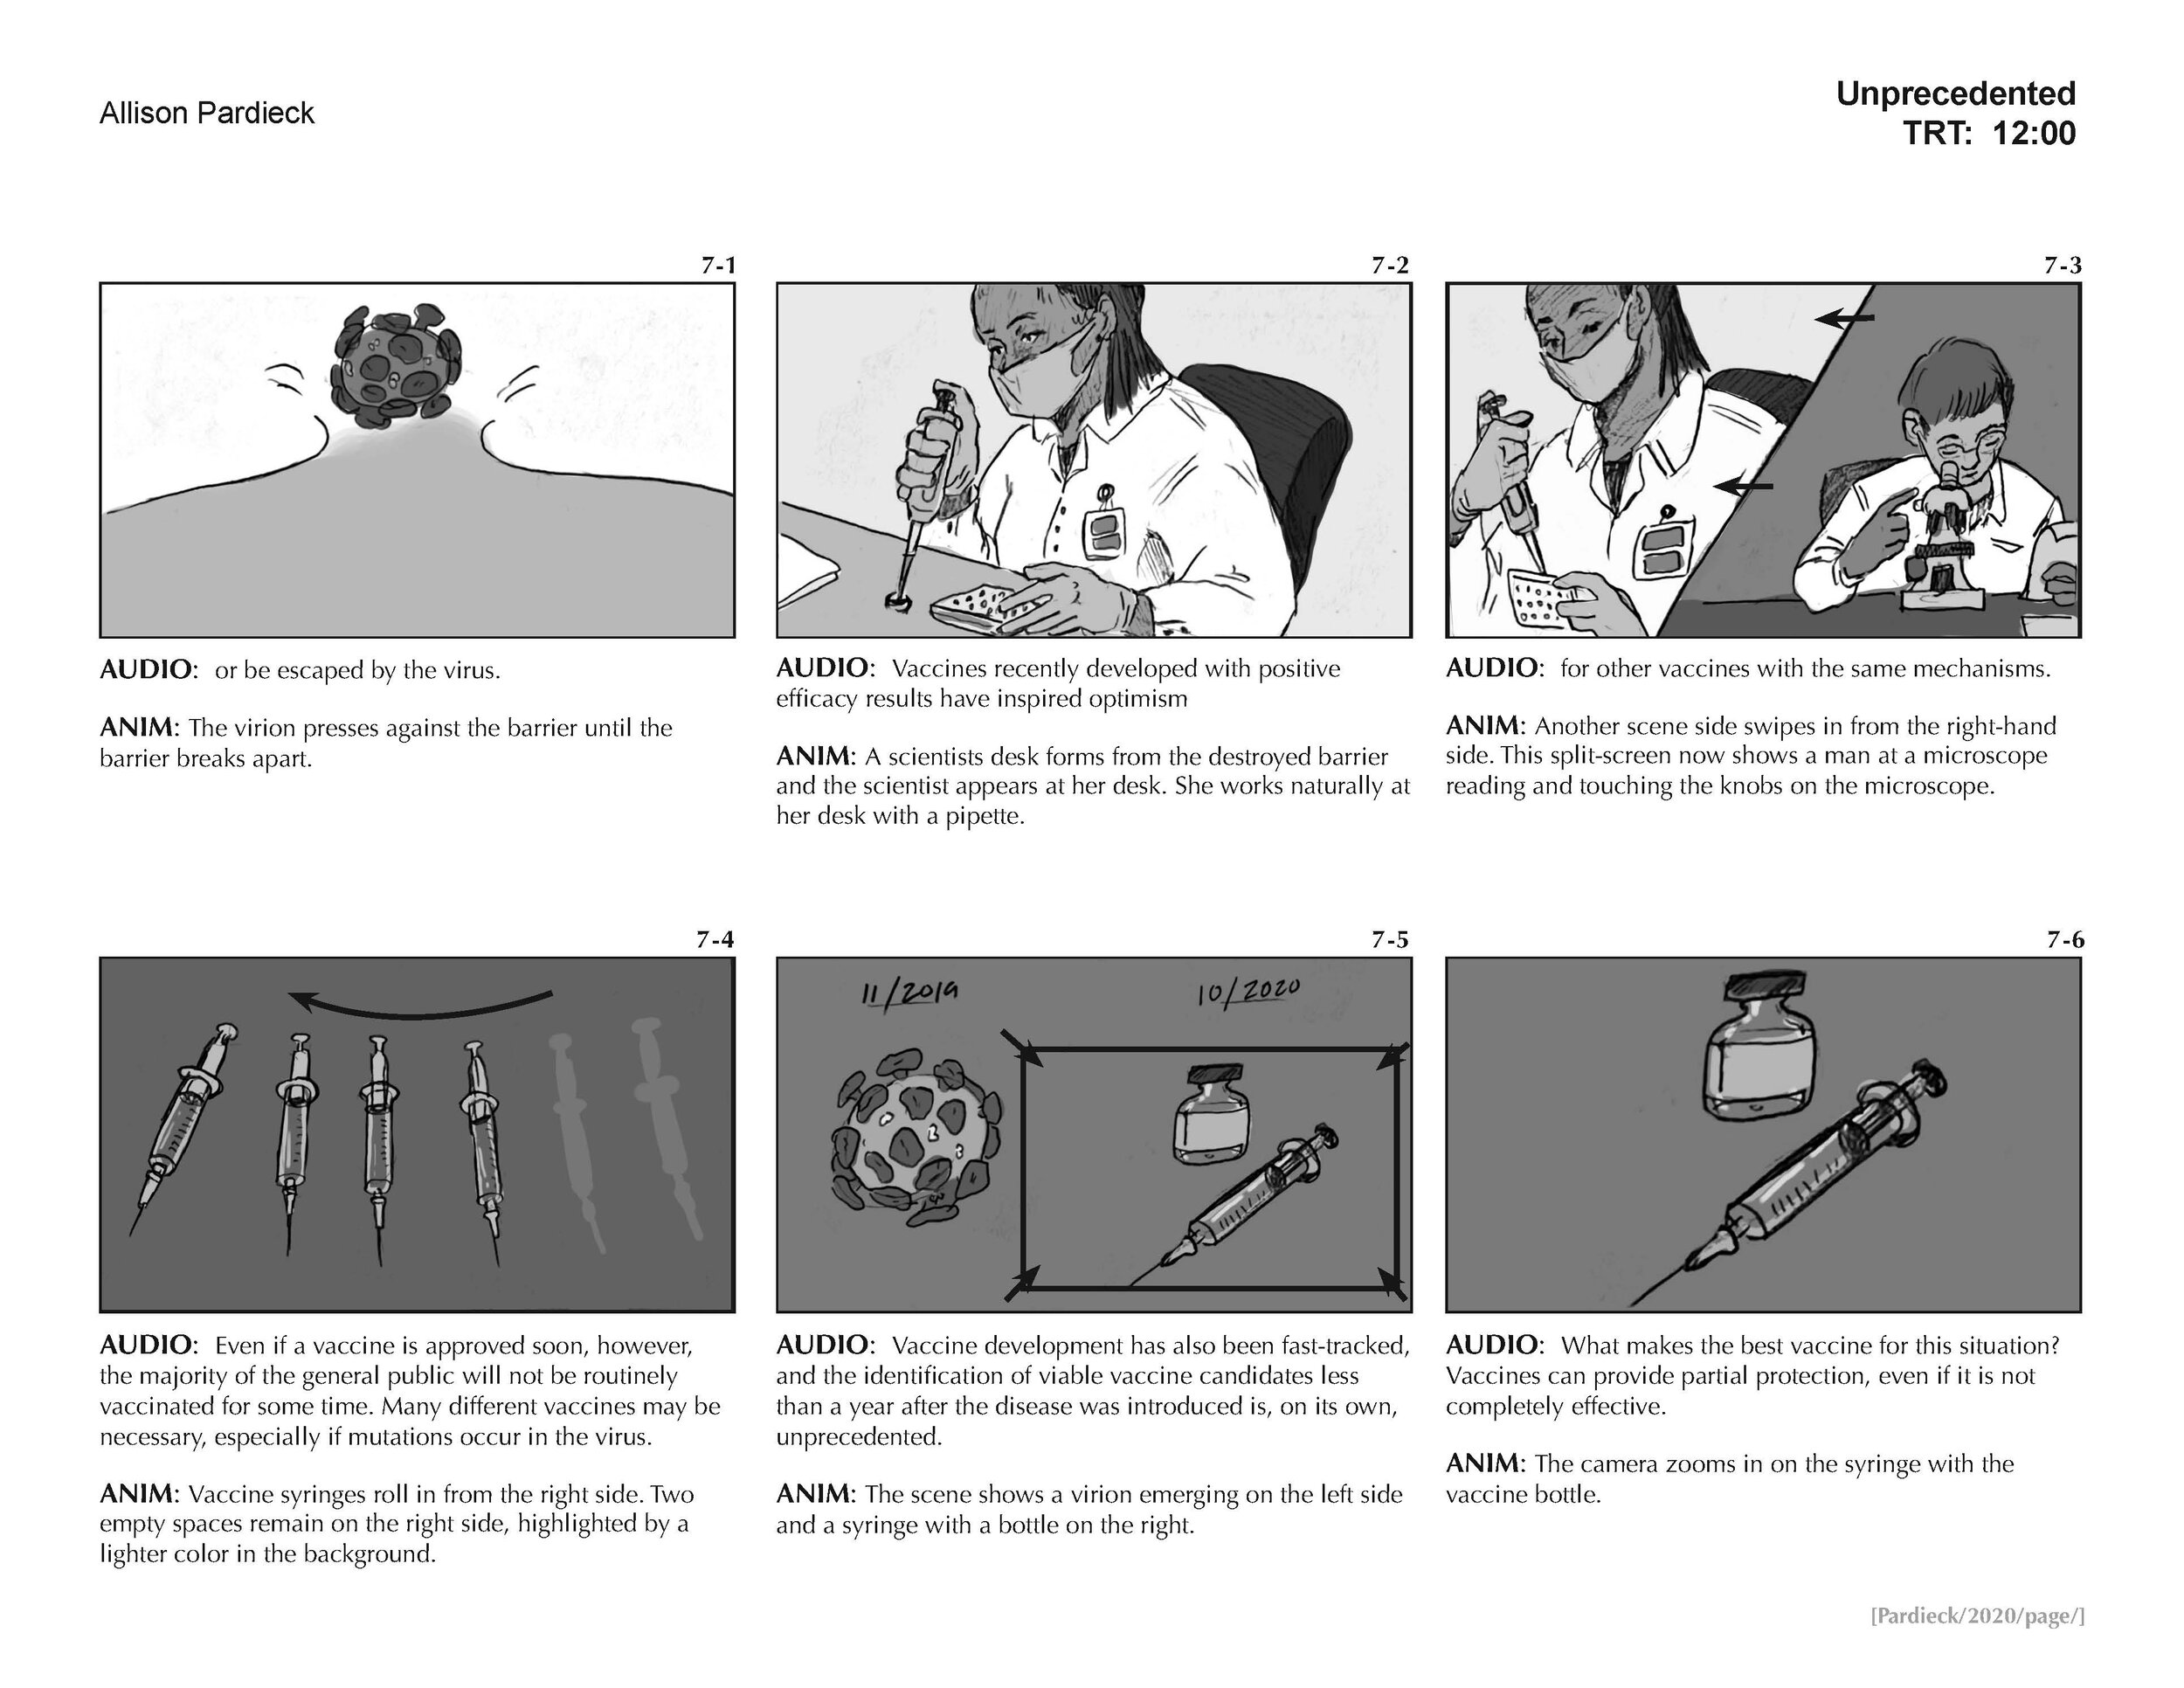 "Unprecedented" Storyboard (page 7)